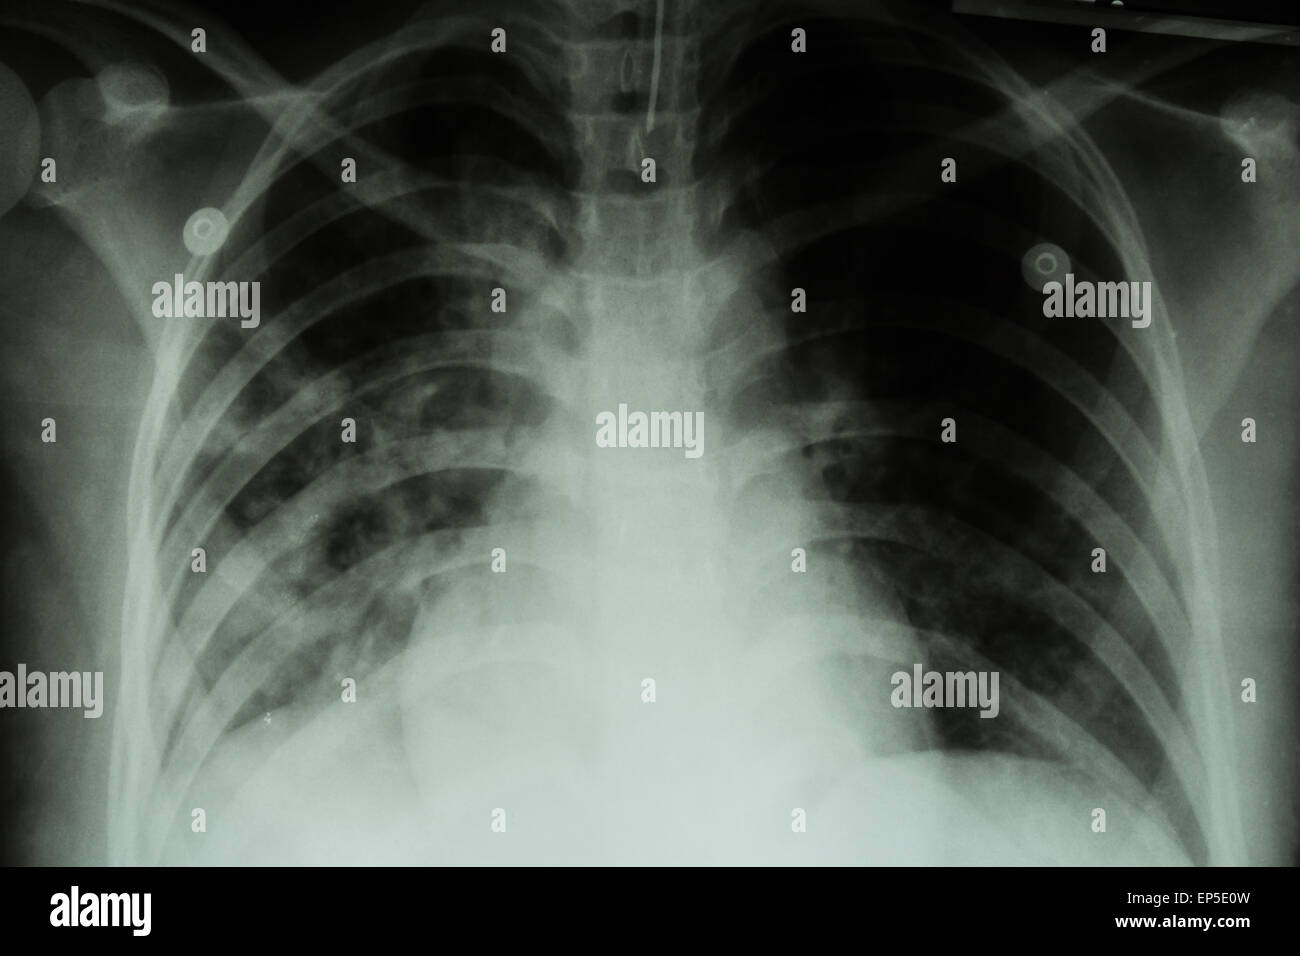 Lungentuberkulose (TB): Röntgen-Thorax zeigen alveoläre Infiltration in beiden Lungen durch Mycobacterium-Tuberkulose-infectio Stockfoto